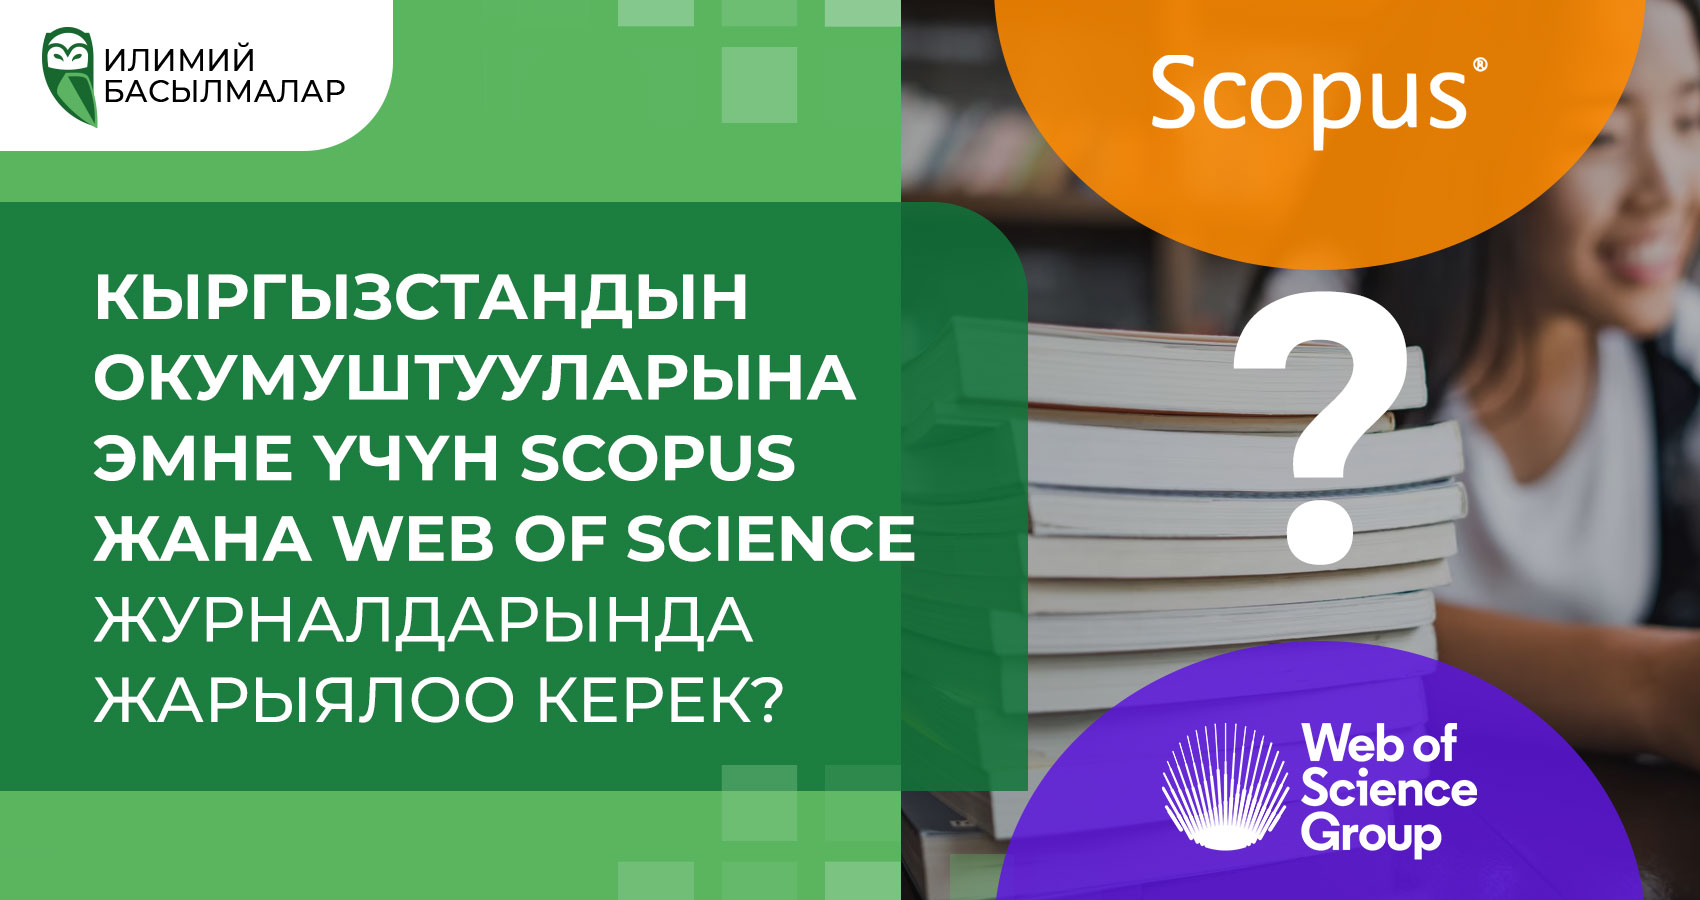 Кыргызстандын окумуштууларына эмне үчүн Scopus жана Web of Science журналдарында жарыялоо керек?